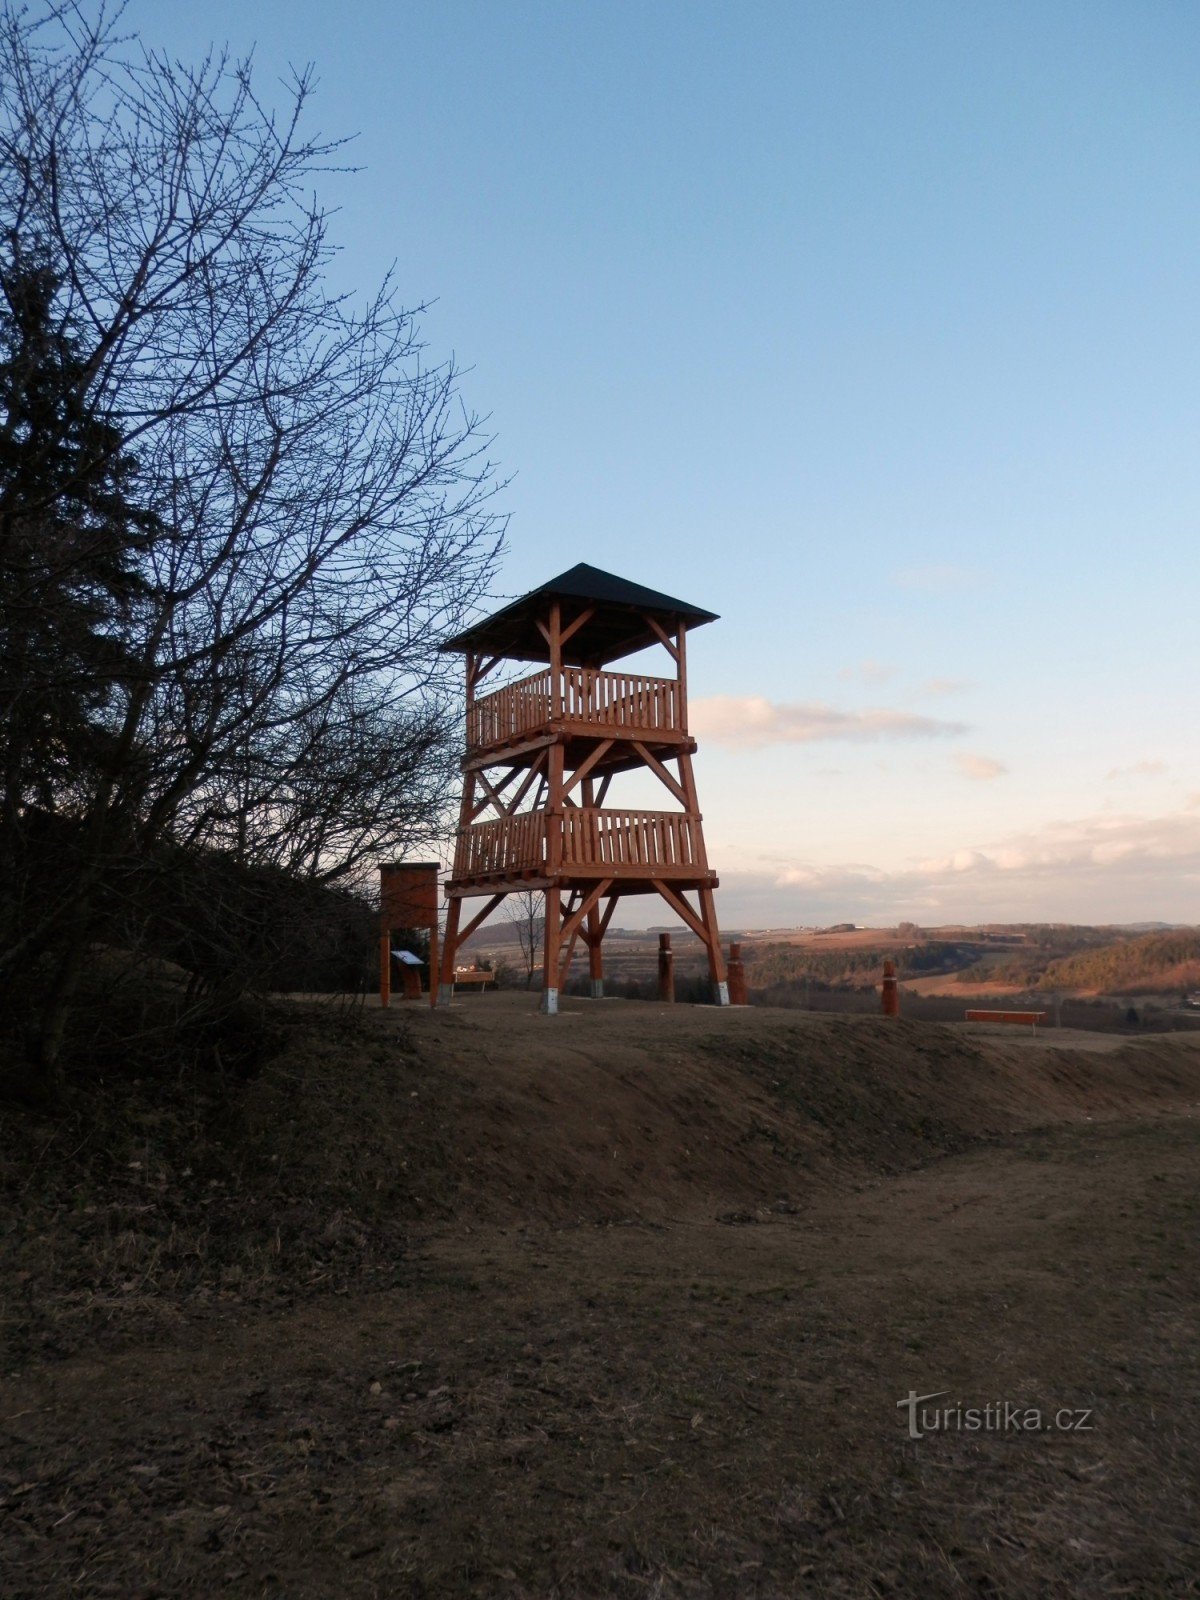 Spešovská lookout tower 1